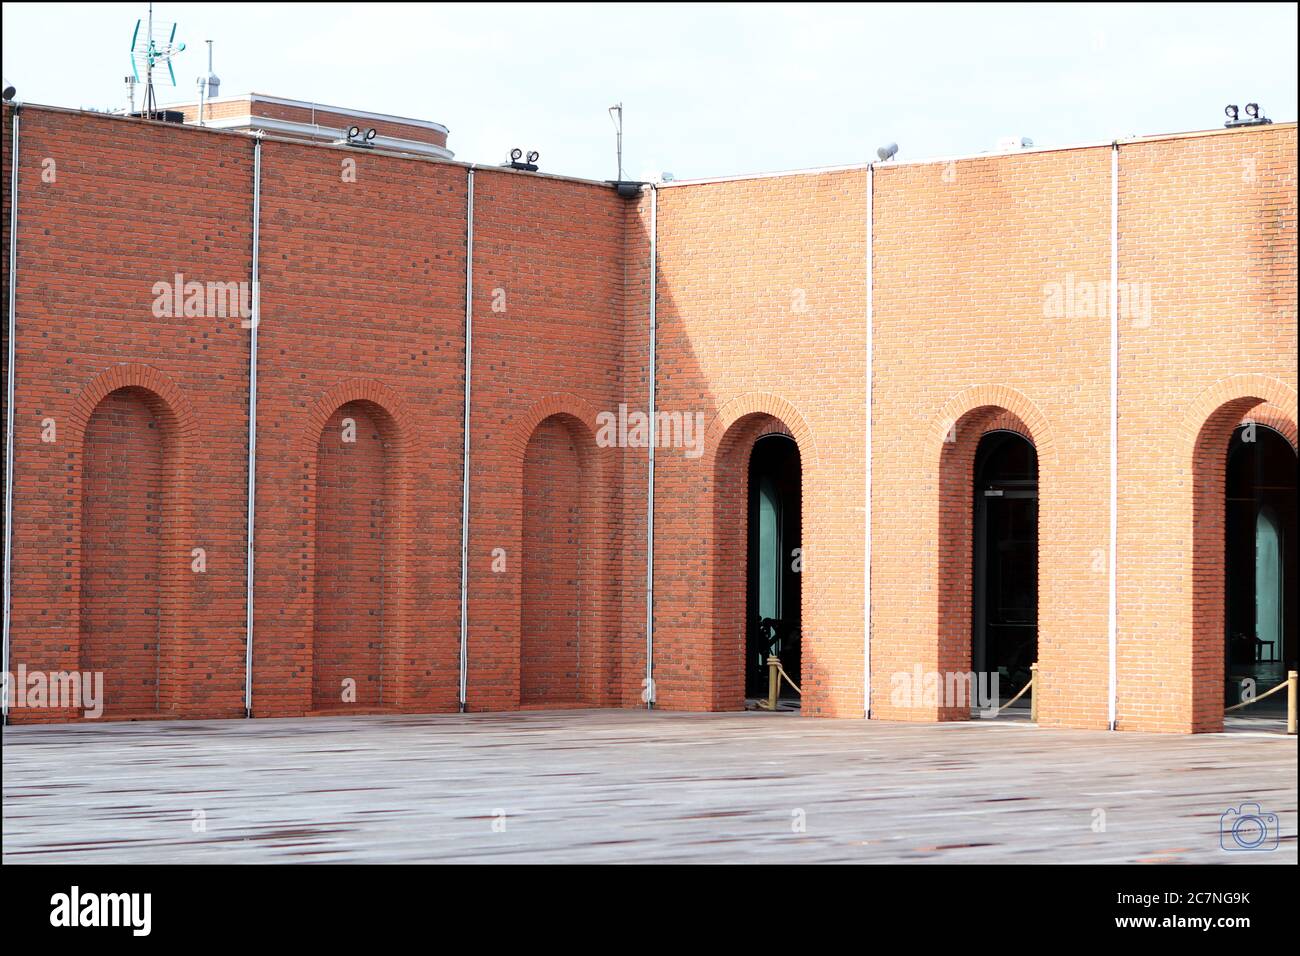 Azkuna Zentroa, Culture and Leisure Centre in Bilbao, Spain Stock Photo